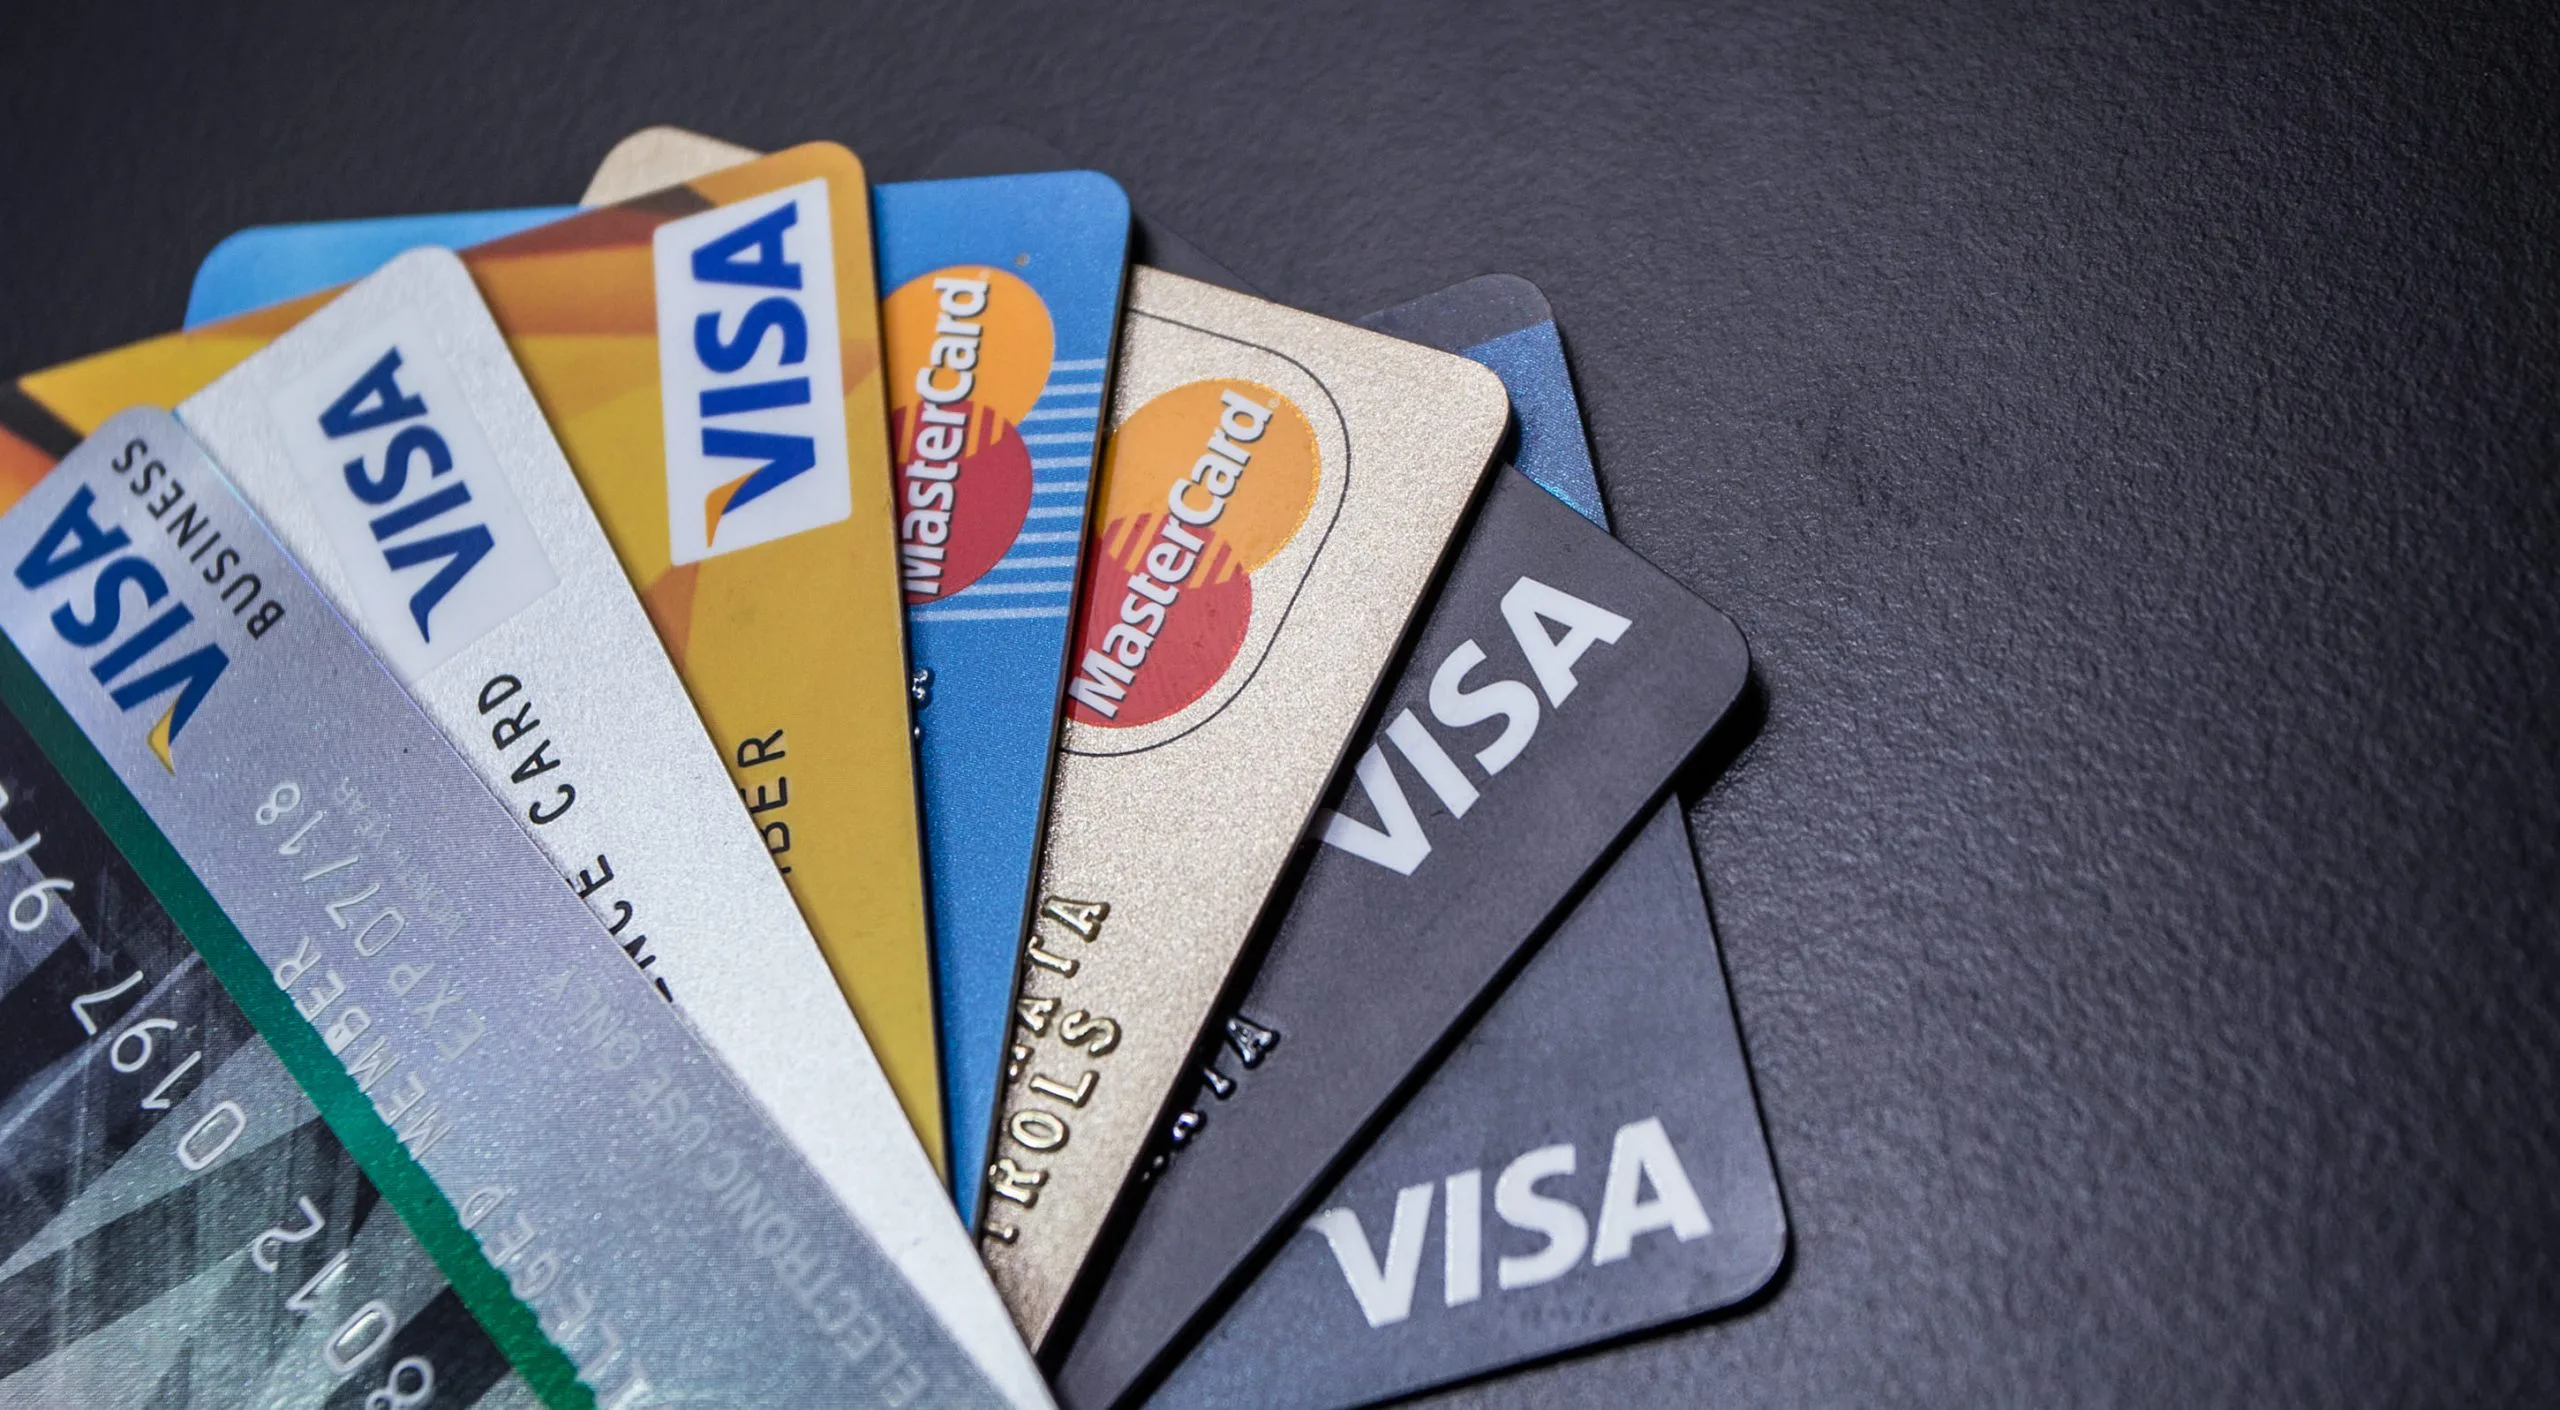 戰國策推出刷卡分期服務新增刷卡分期銀行戰國策集團